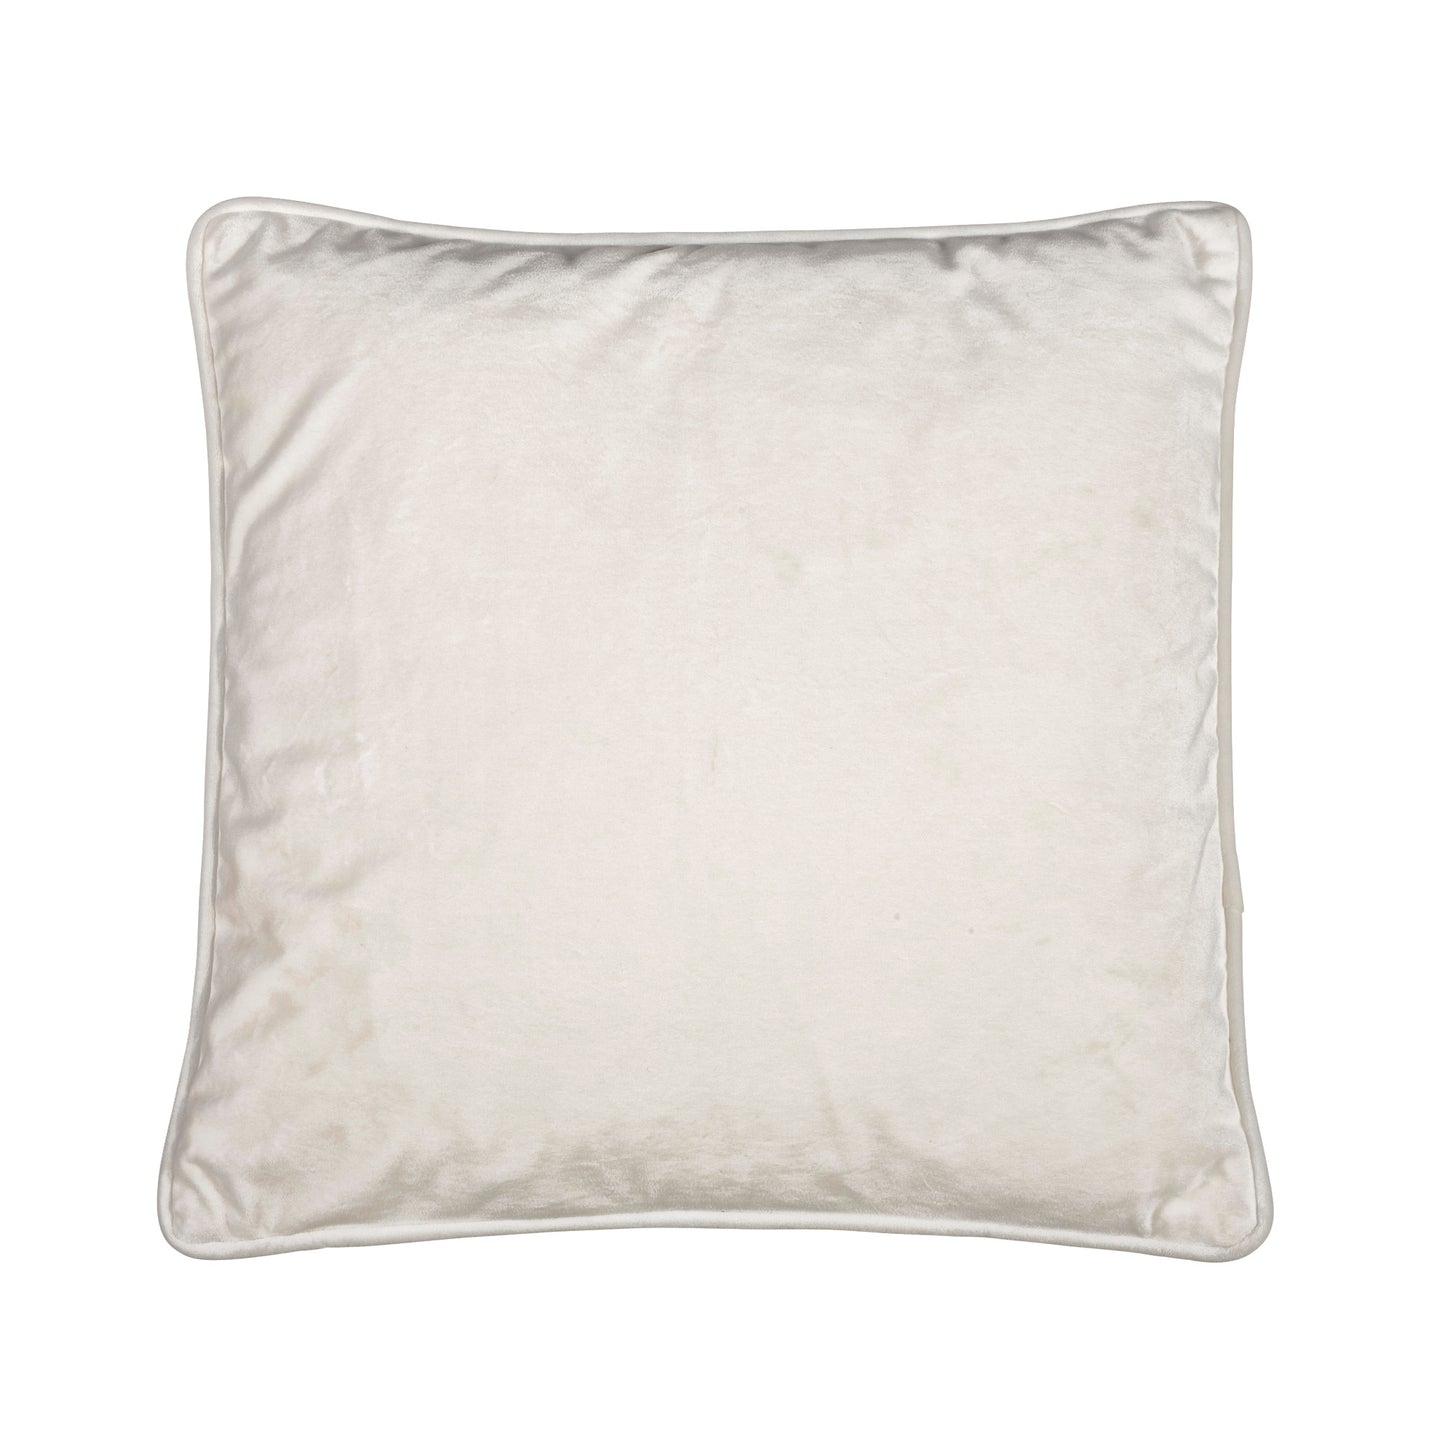 Fondaco VELVET Cushion cover in OffWhite Velor, 45x45 cm